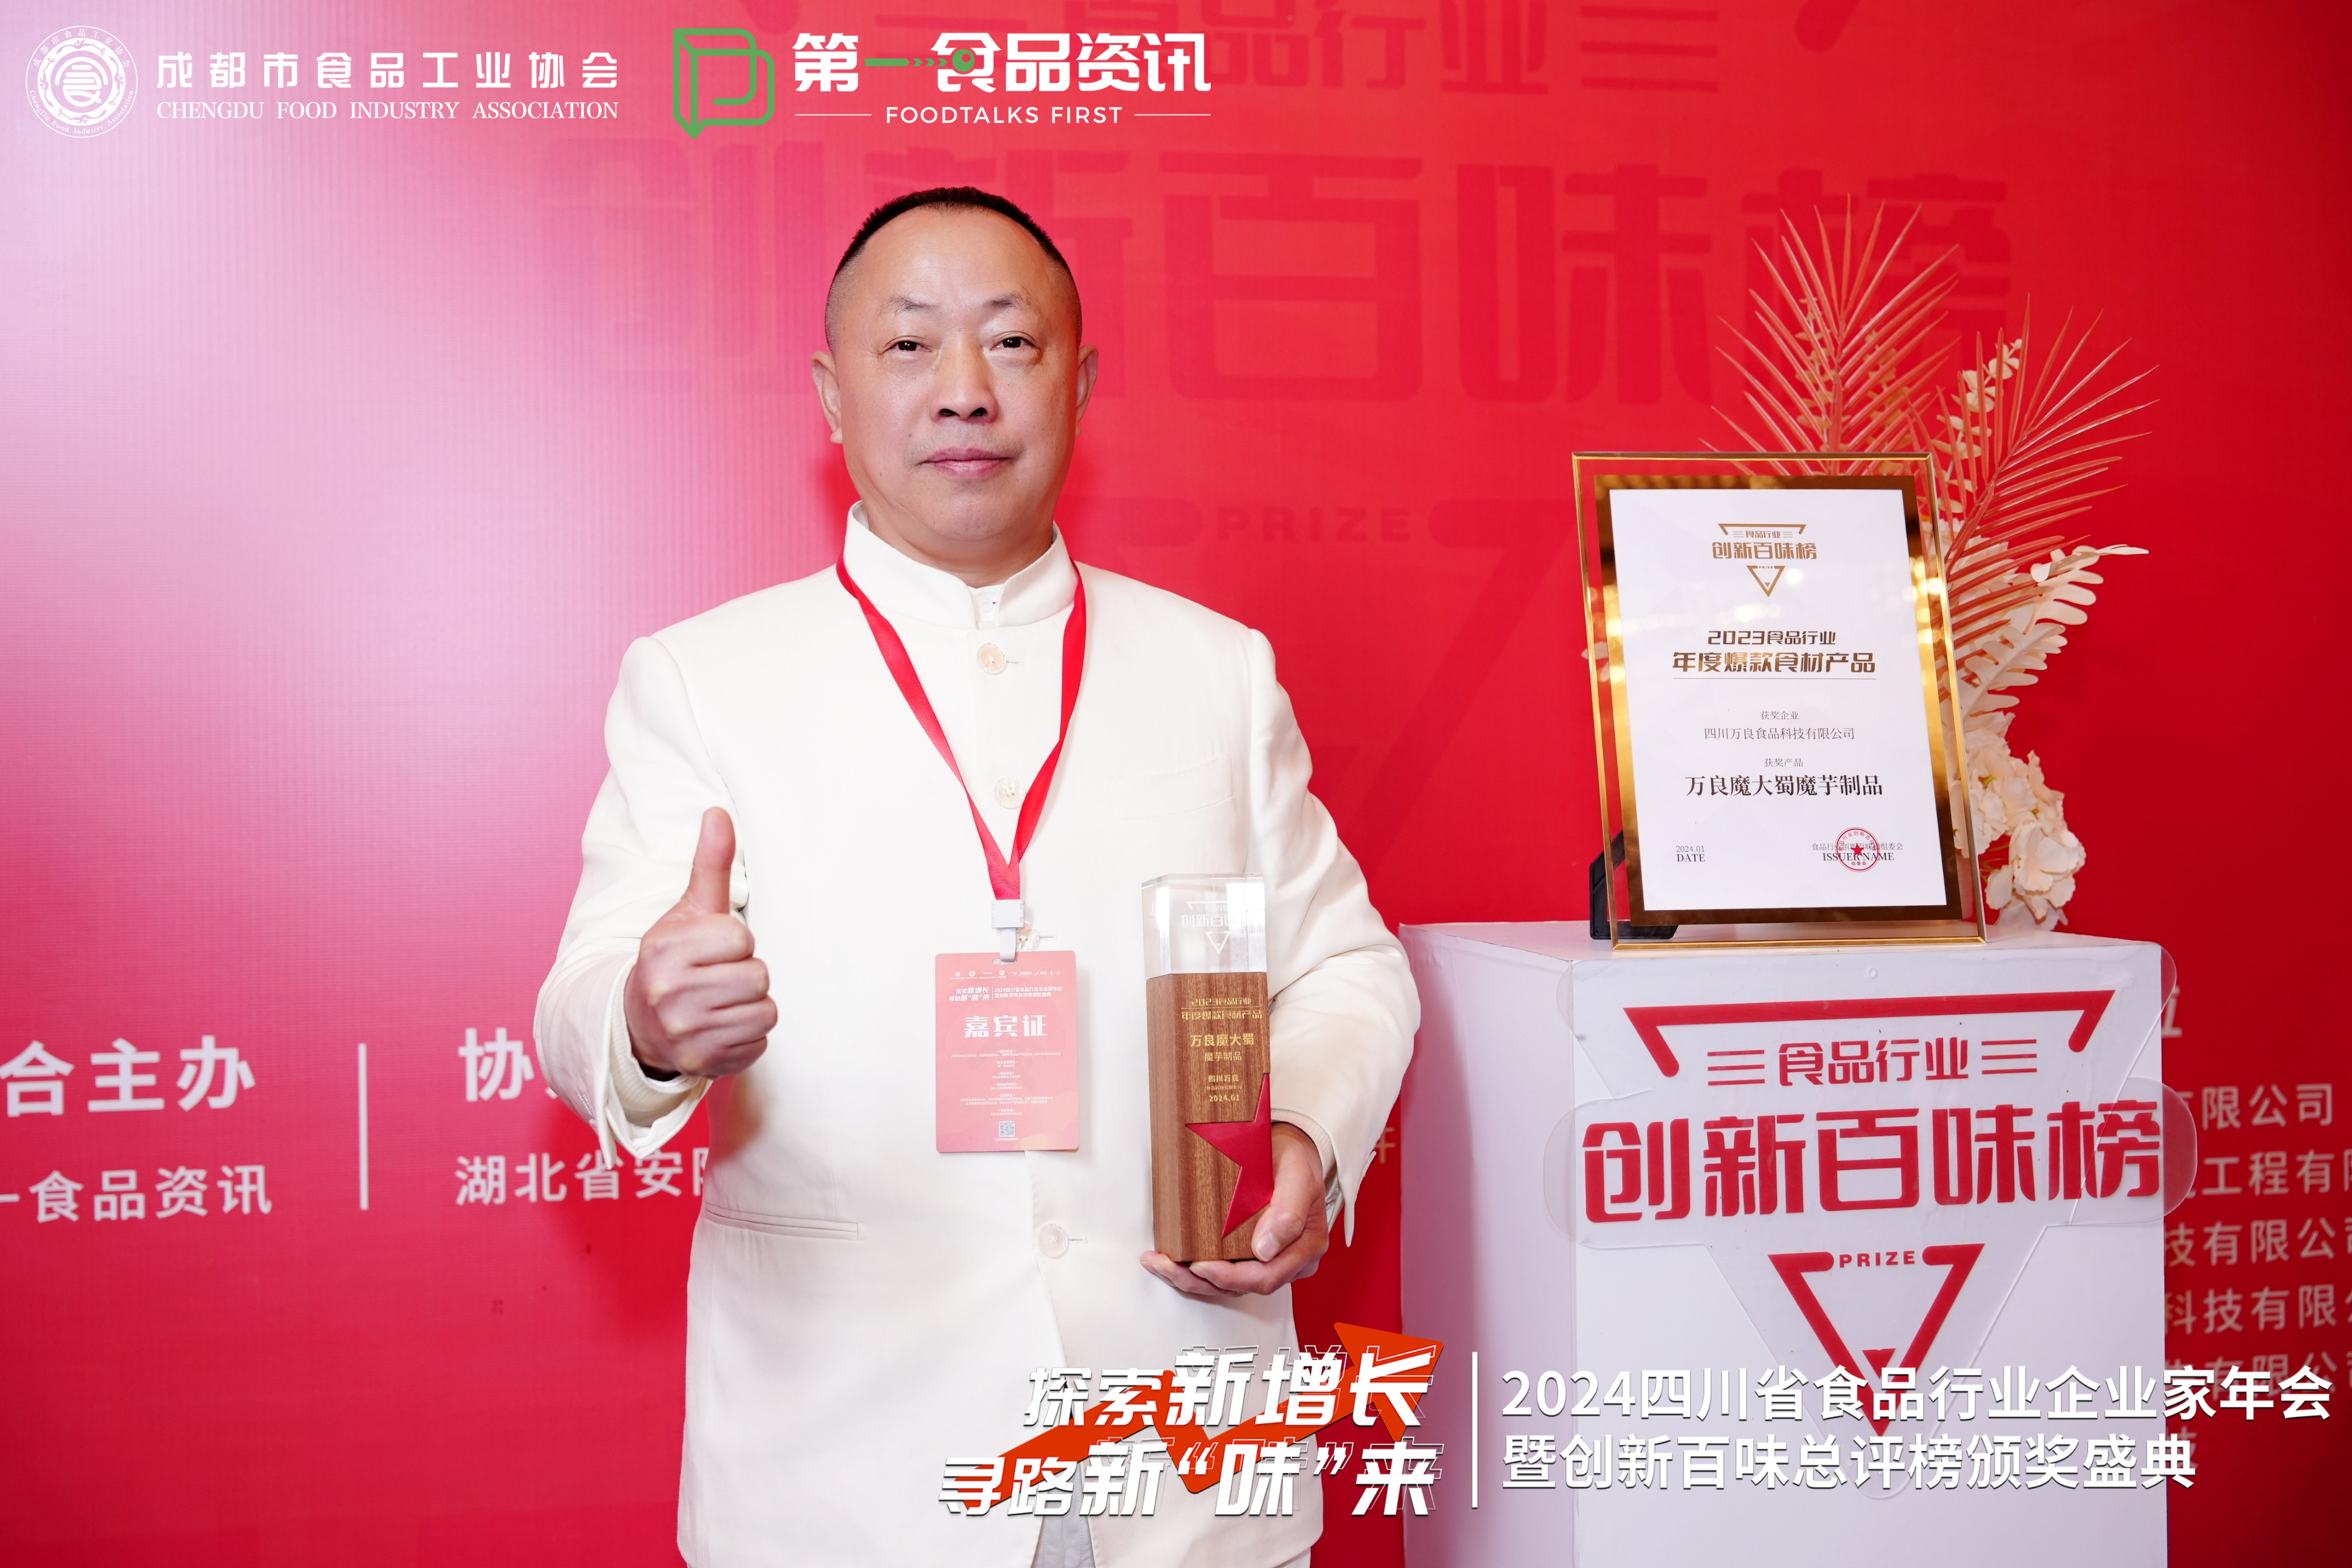 万良食品“魔大蜀”雪山芋系列产品获得 年度爆款食材产品荣誉称号